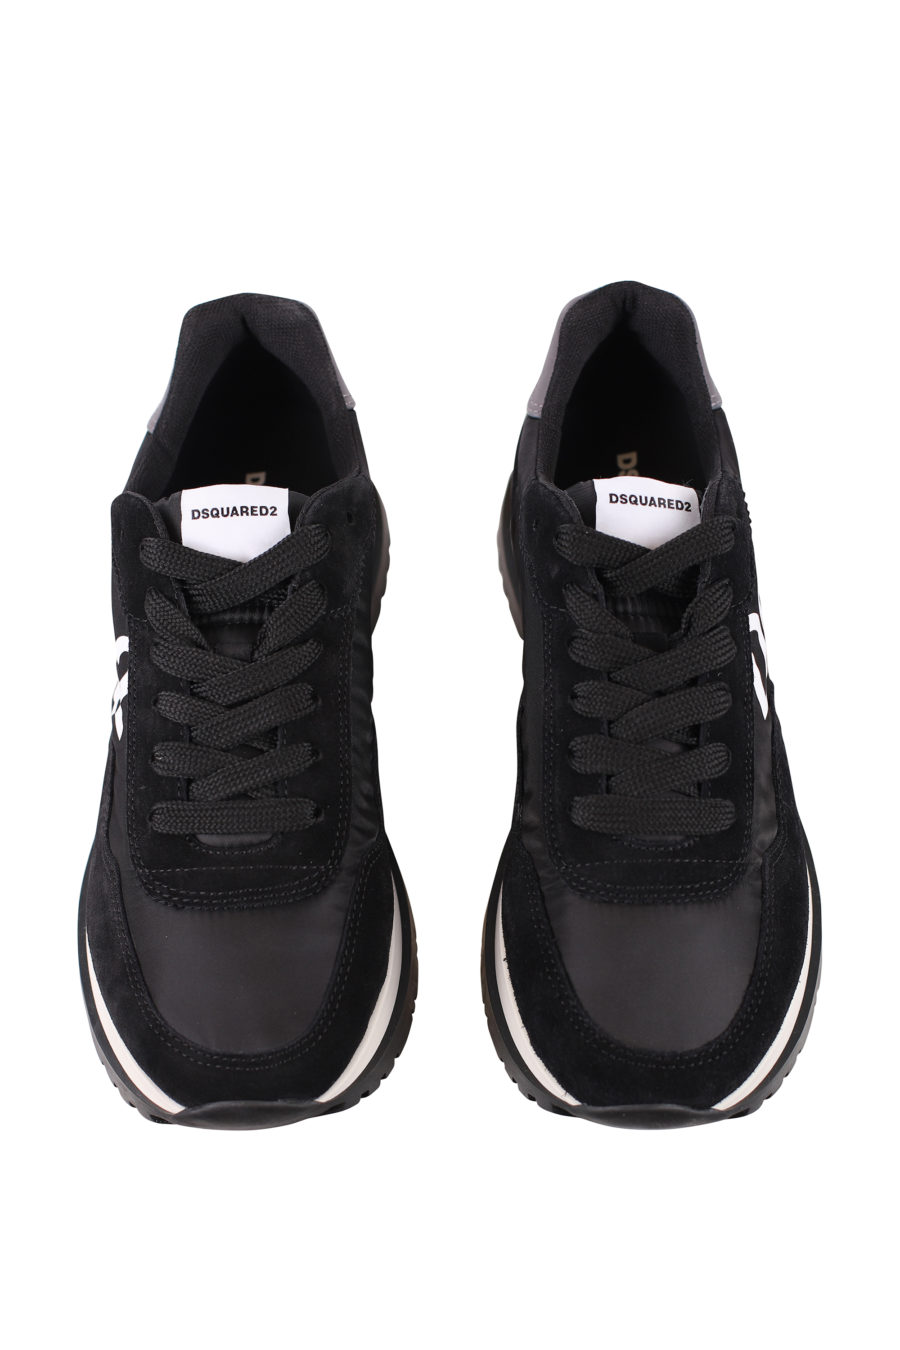 Zapatillas negras con logo diagonal blanco - IMG 0719